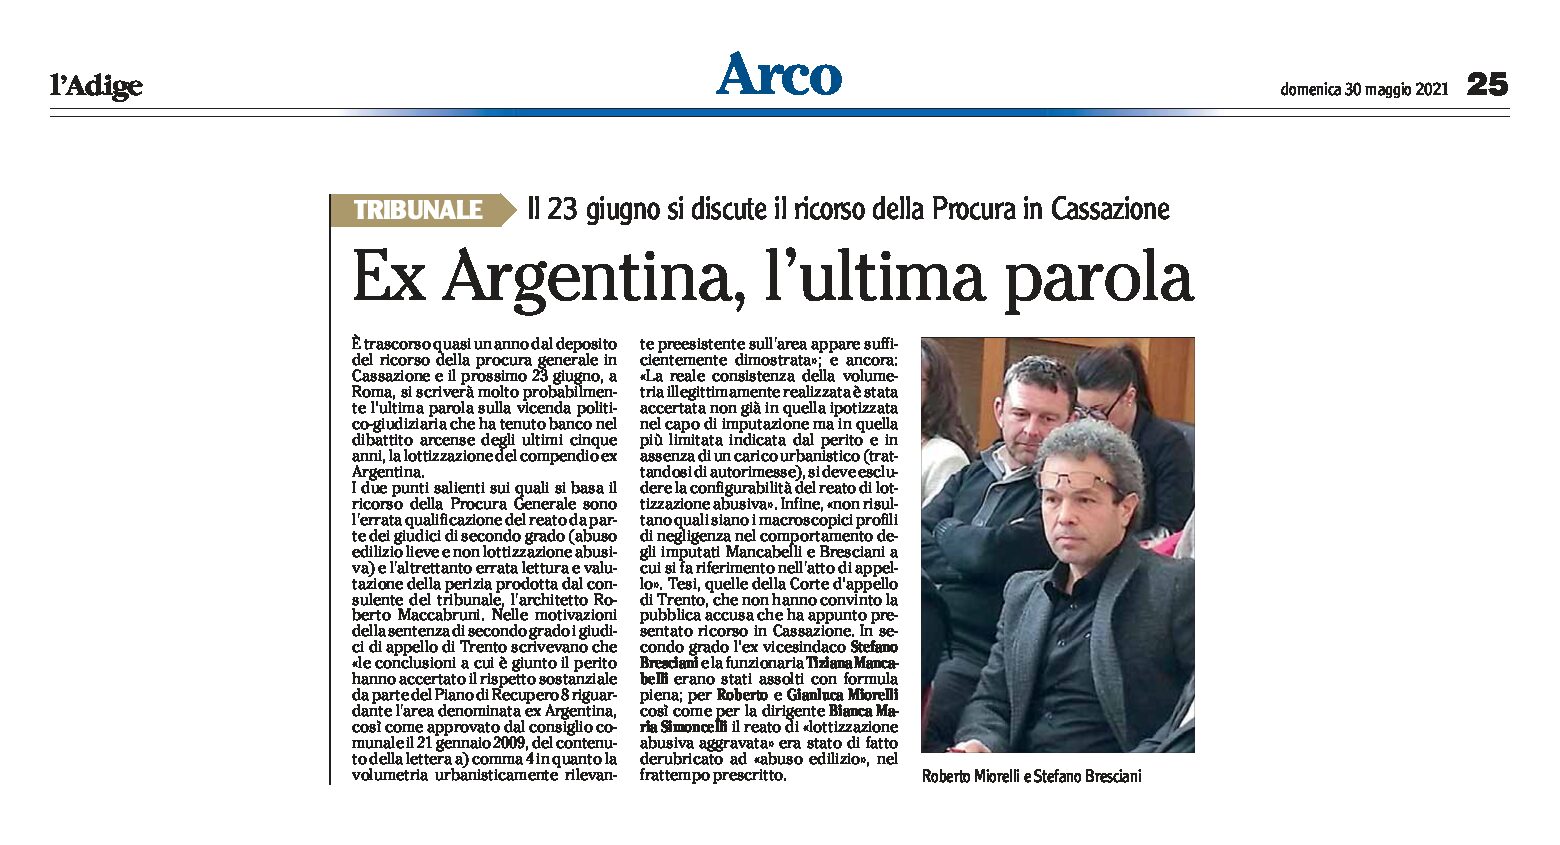 Arco, ex Argentina: l’ultima parola. Il 23 giugno si discute il ricorso della Procura in Cassazione